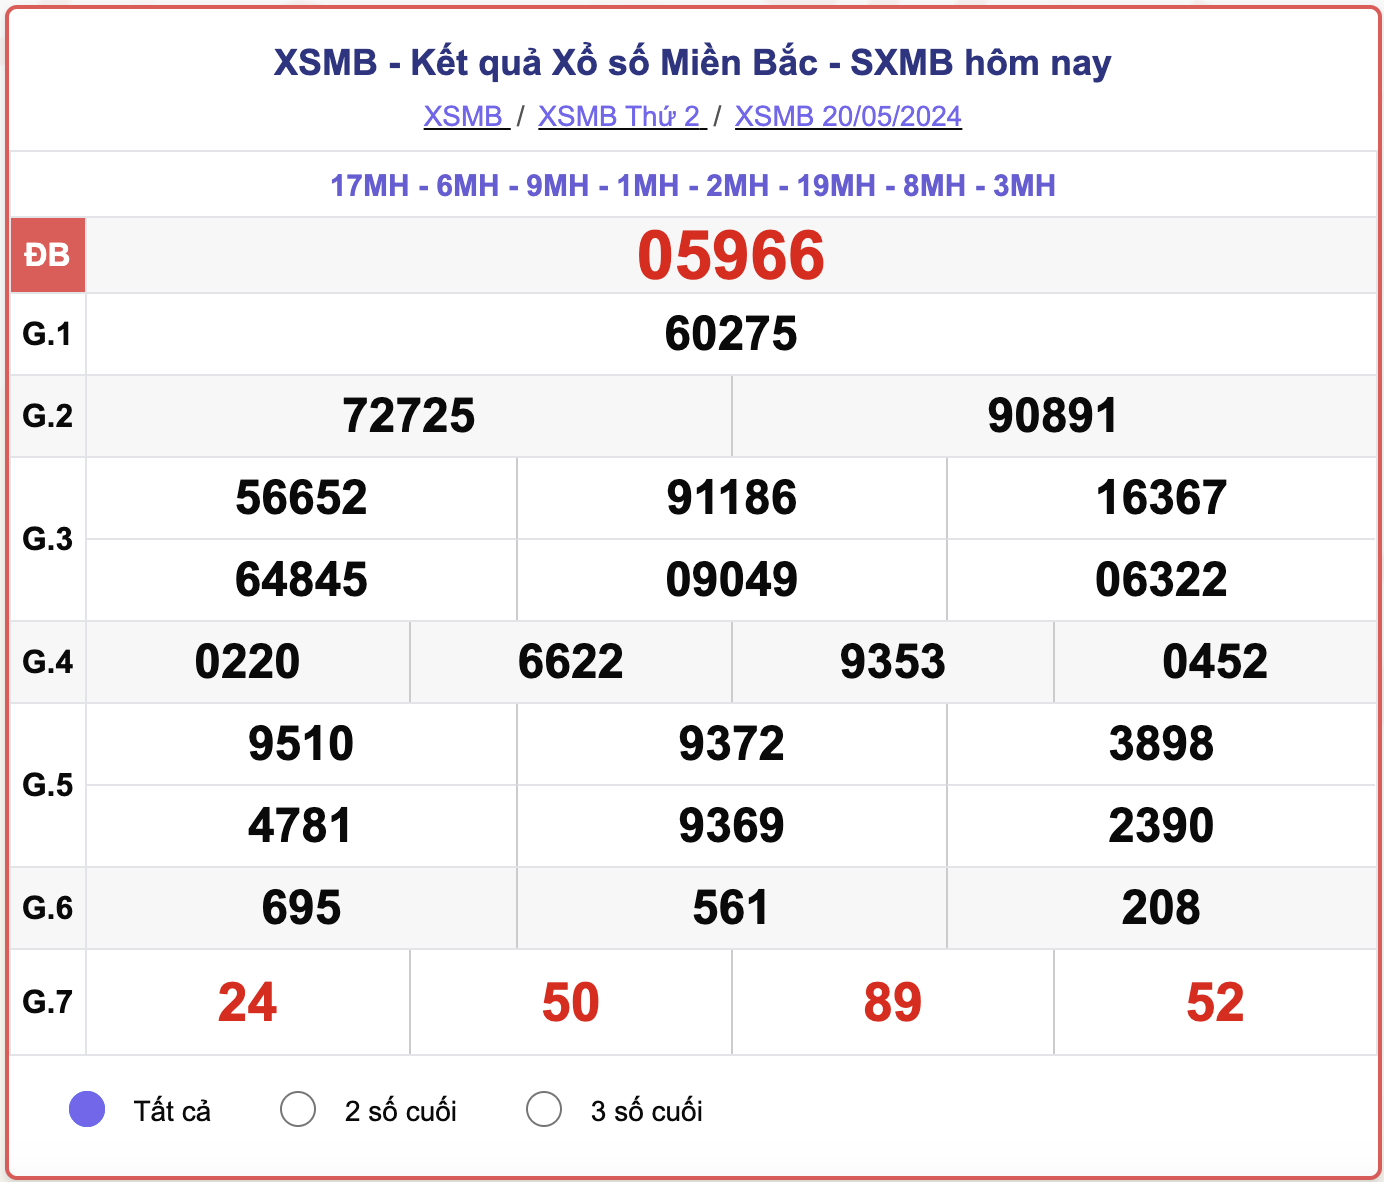 XSMB 24/5 - Kết quả xổ số miền Bắc hôm nay 24/5/2024 - KQXSMB ngày 24/5- Ảnh 5.